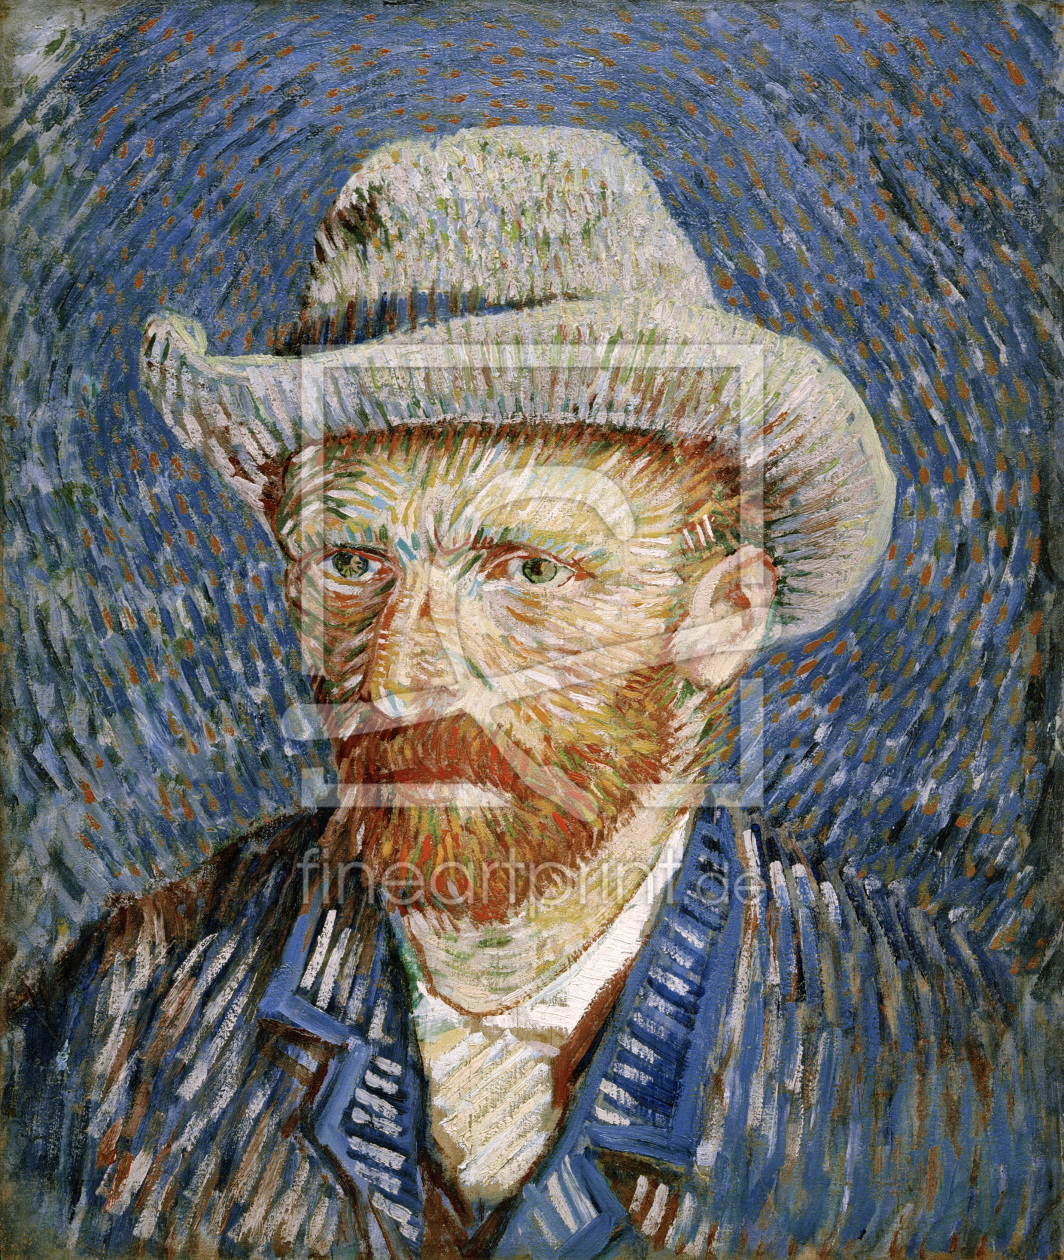 Bild-Nr.: 30003064 van Gogh, Self-portrait with felt hat erstellt von van Gogh, Vincent